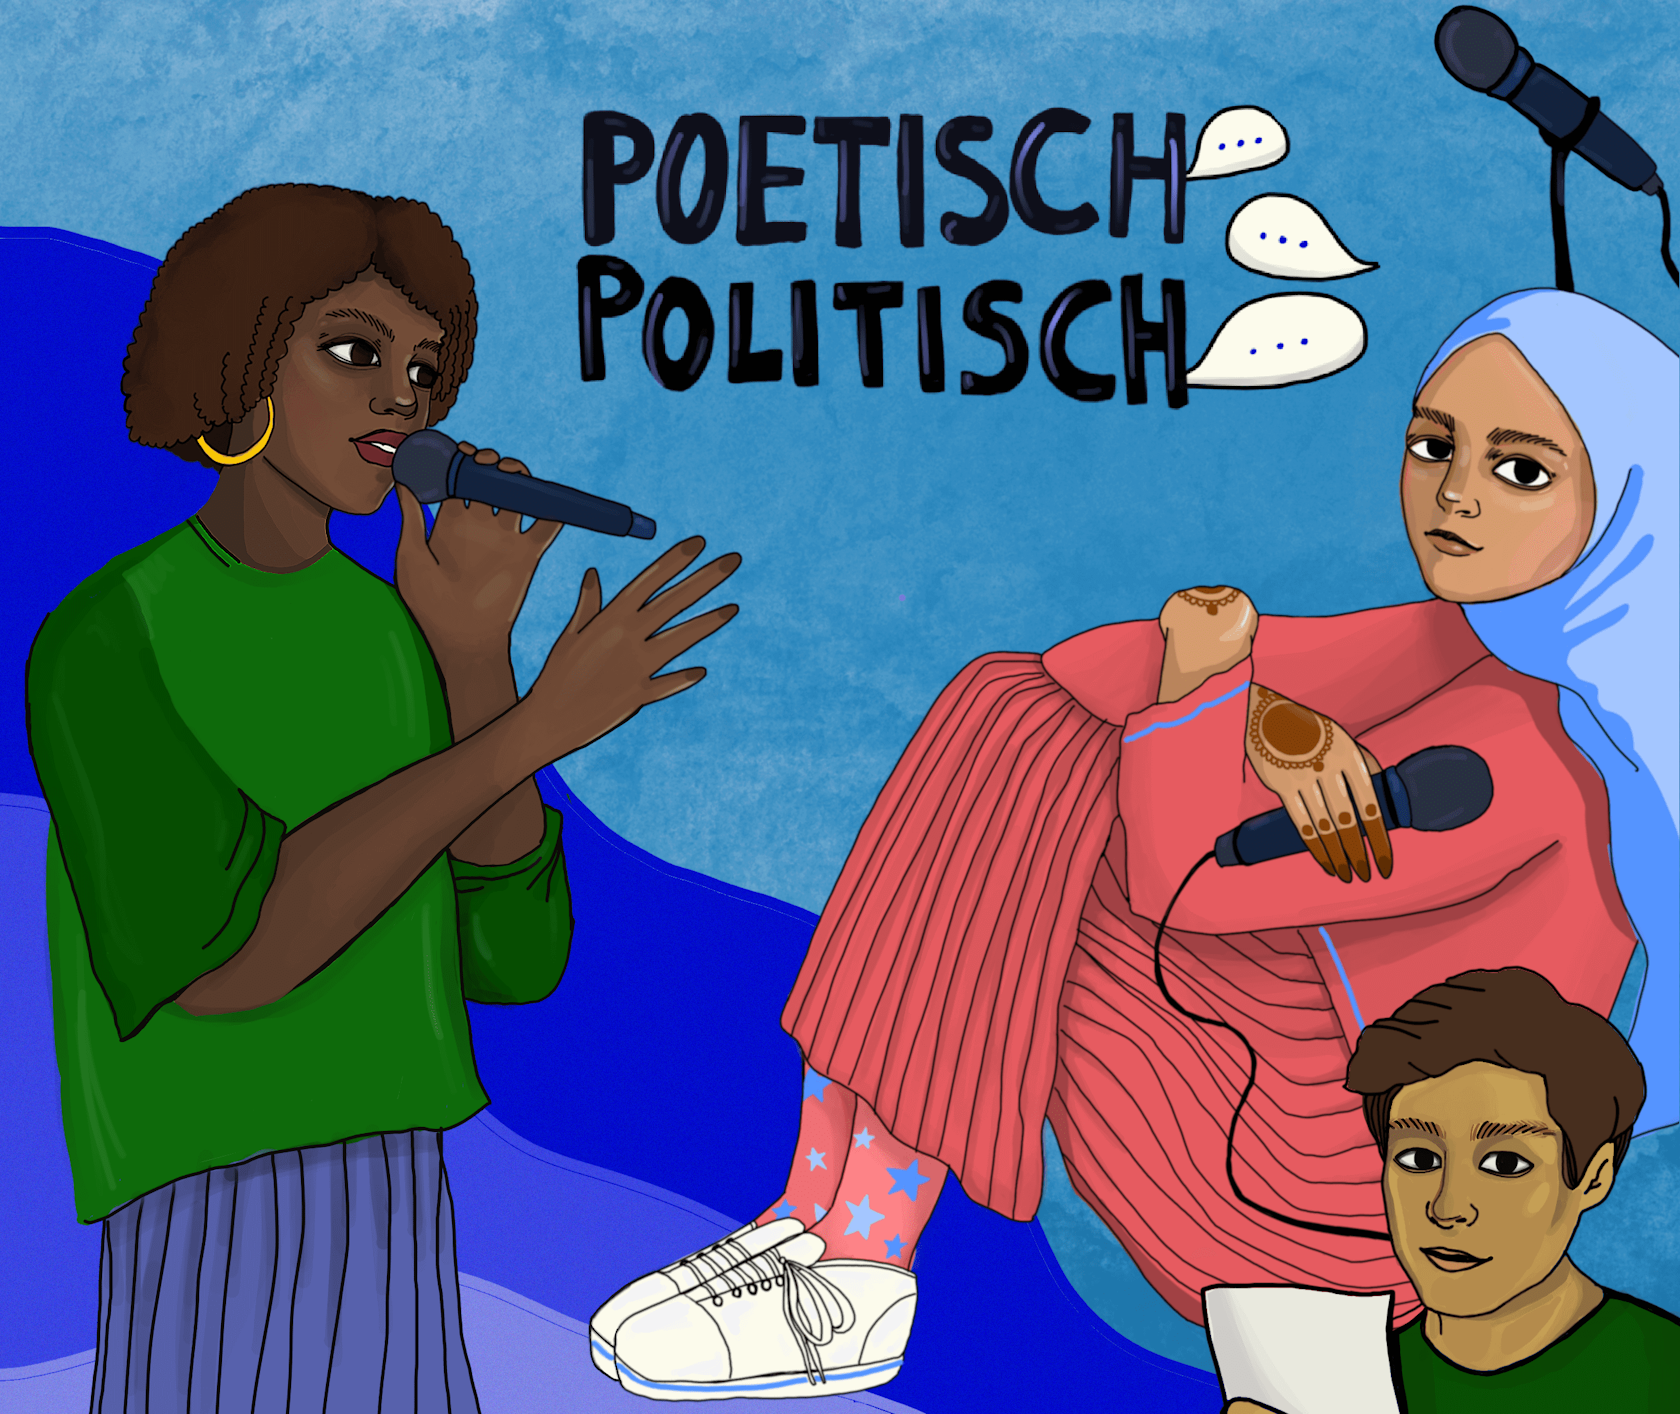 Poetisch Politisch Illustration
